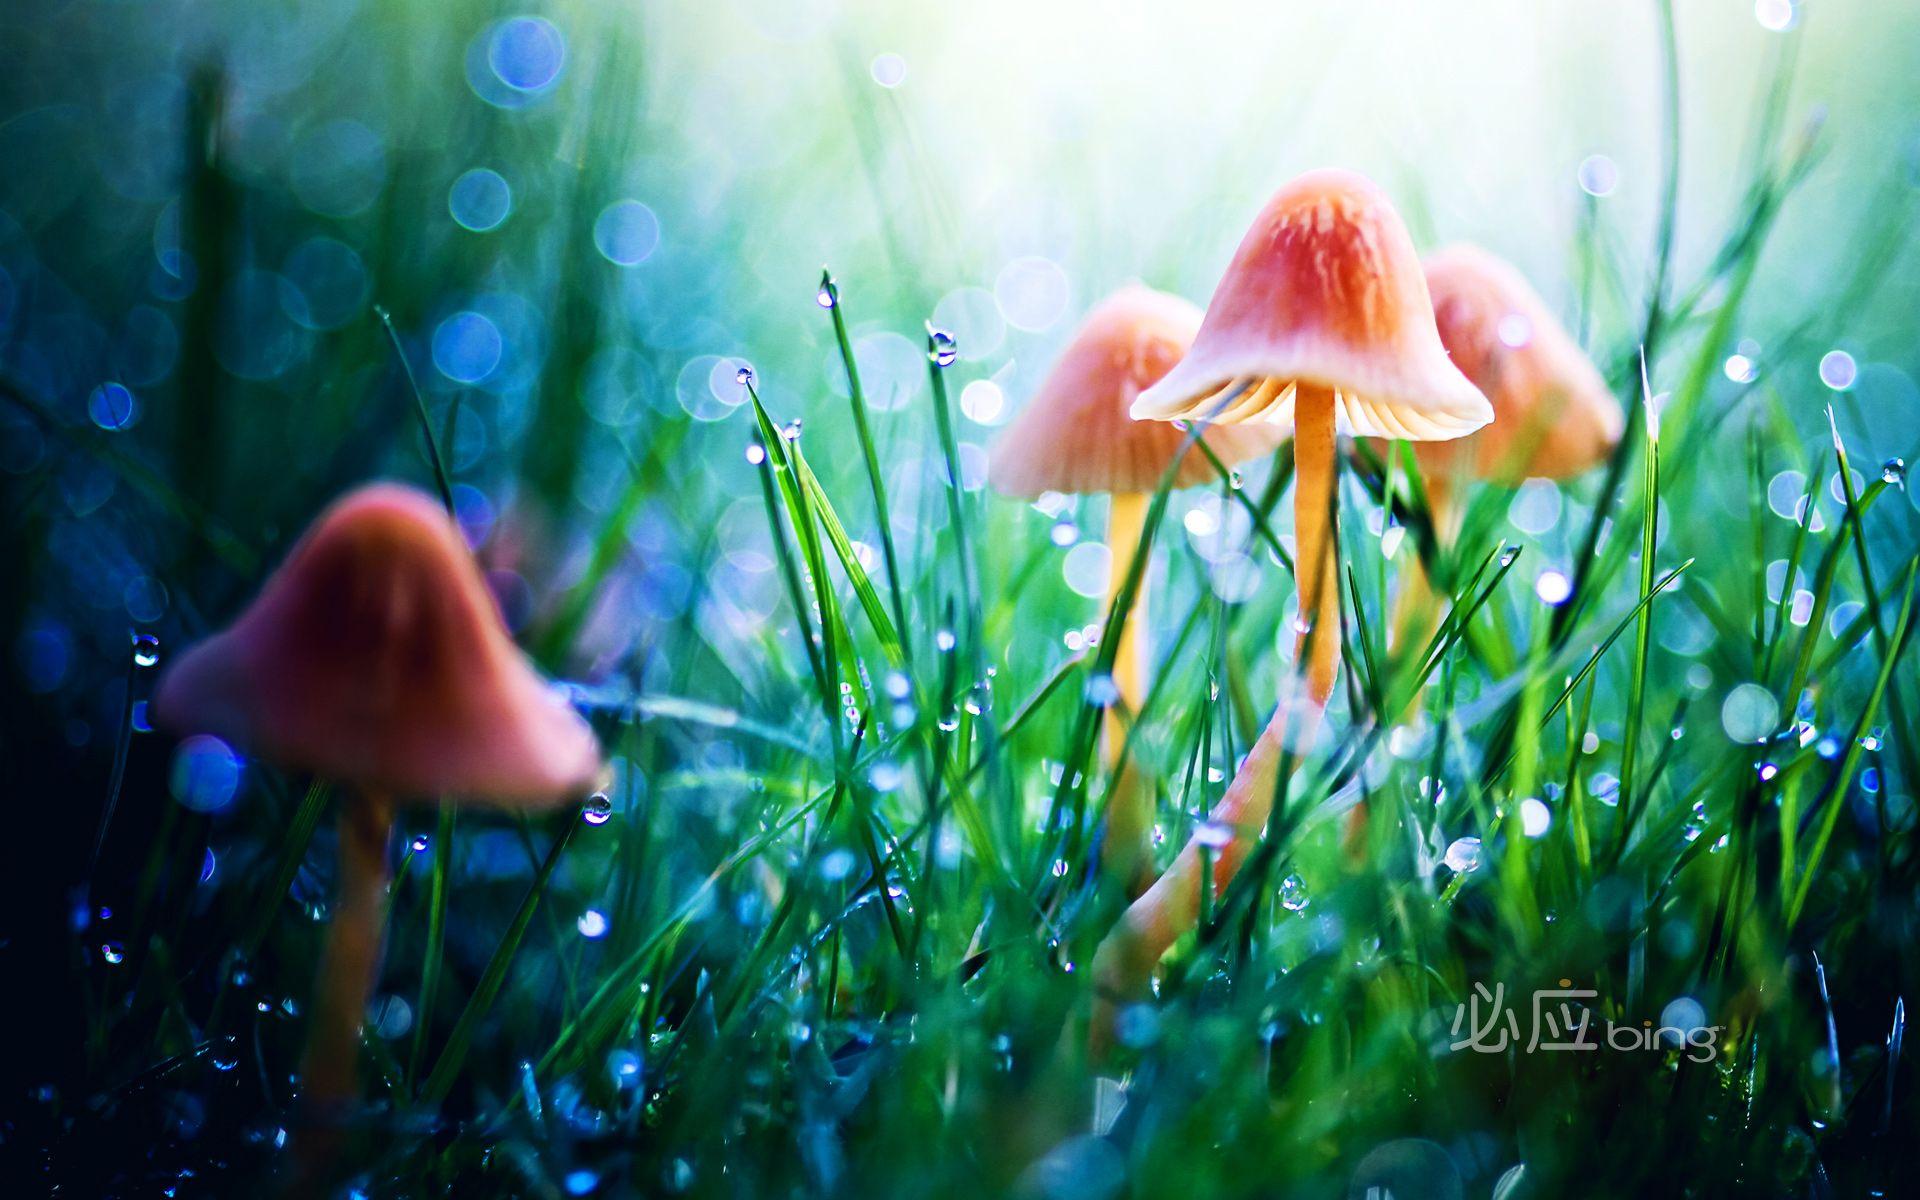 mushrooms in fairy land